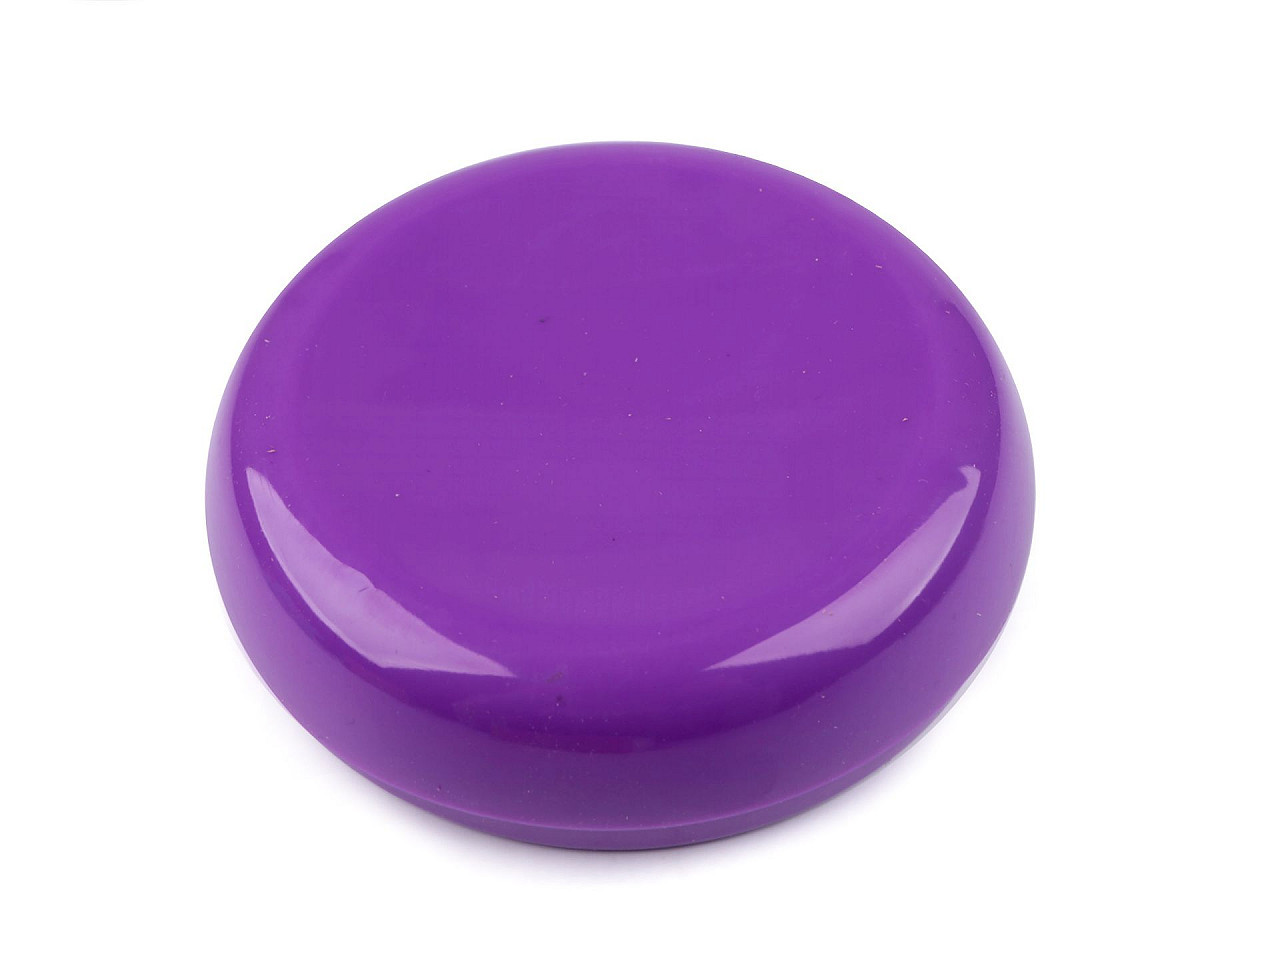 Magnetická podložka na jehly a špendlíky, barva 3 fialová purpura